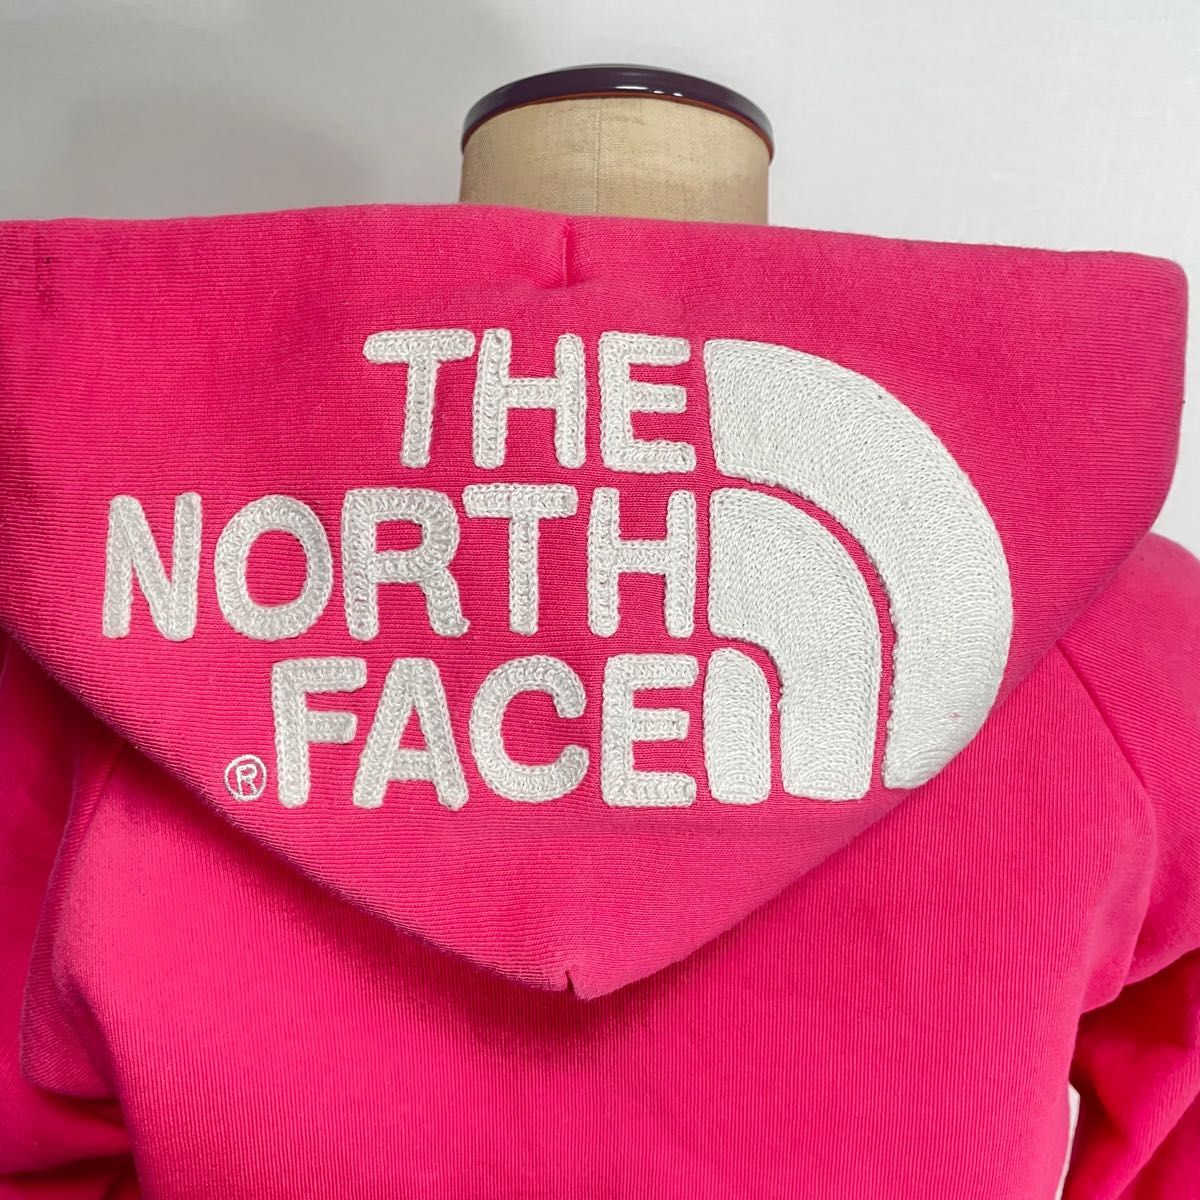 THE NORTH FACE ジップパーカー 希少カラーデカロゴ ピンク×白色